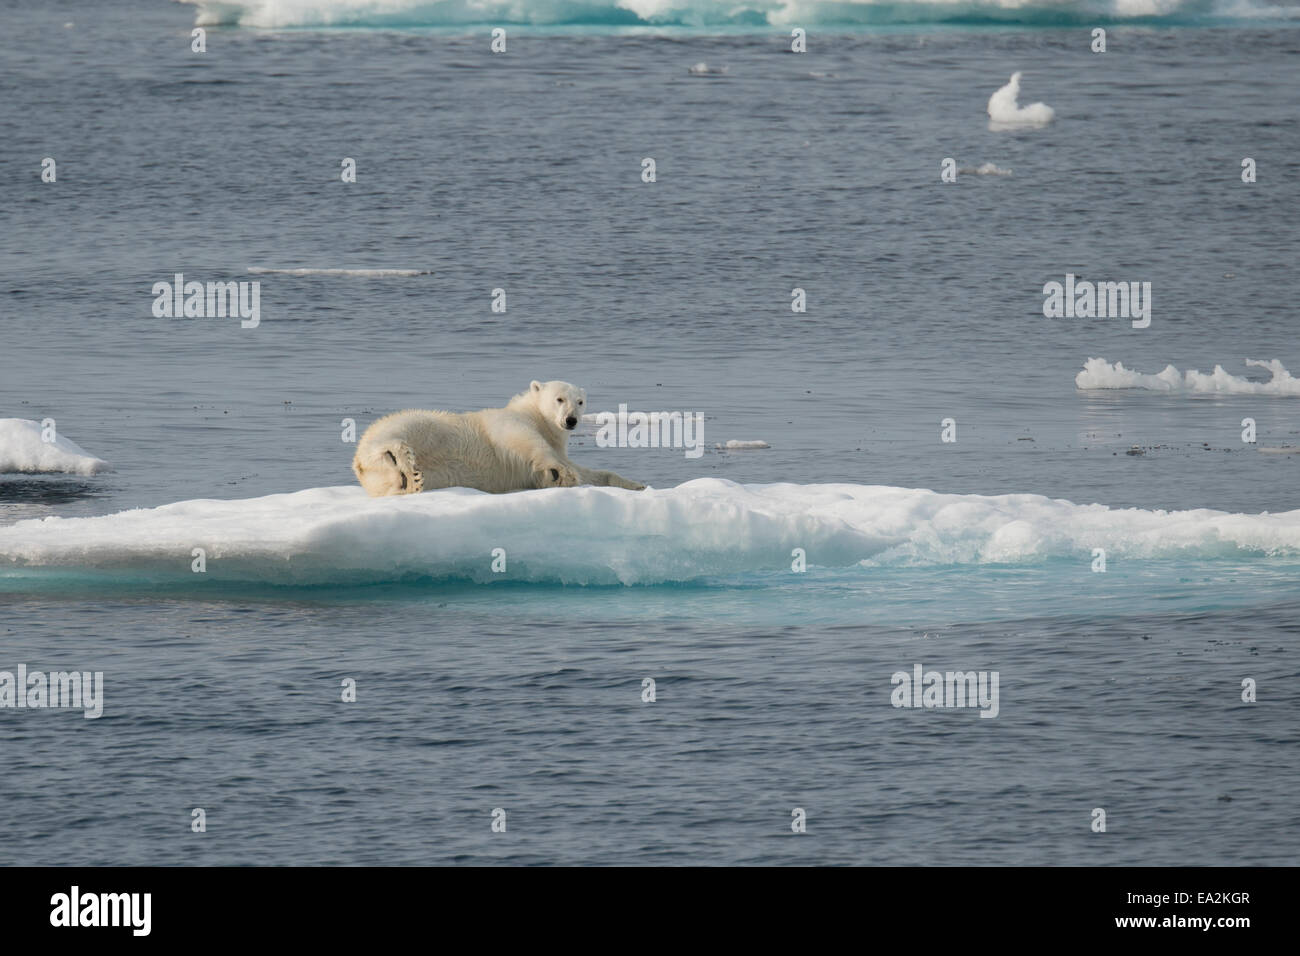 Macho, el Oso Polar Ursus maritimus, escalada sobre un iceberg después de nadar, de la isla de Baffin, el Ártico canadiense. Foto de stock